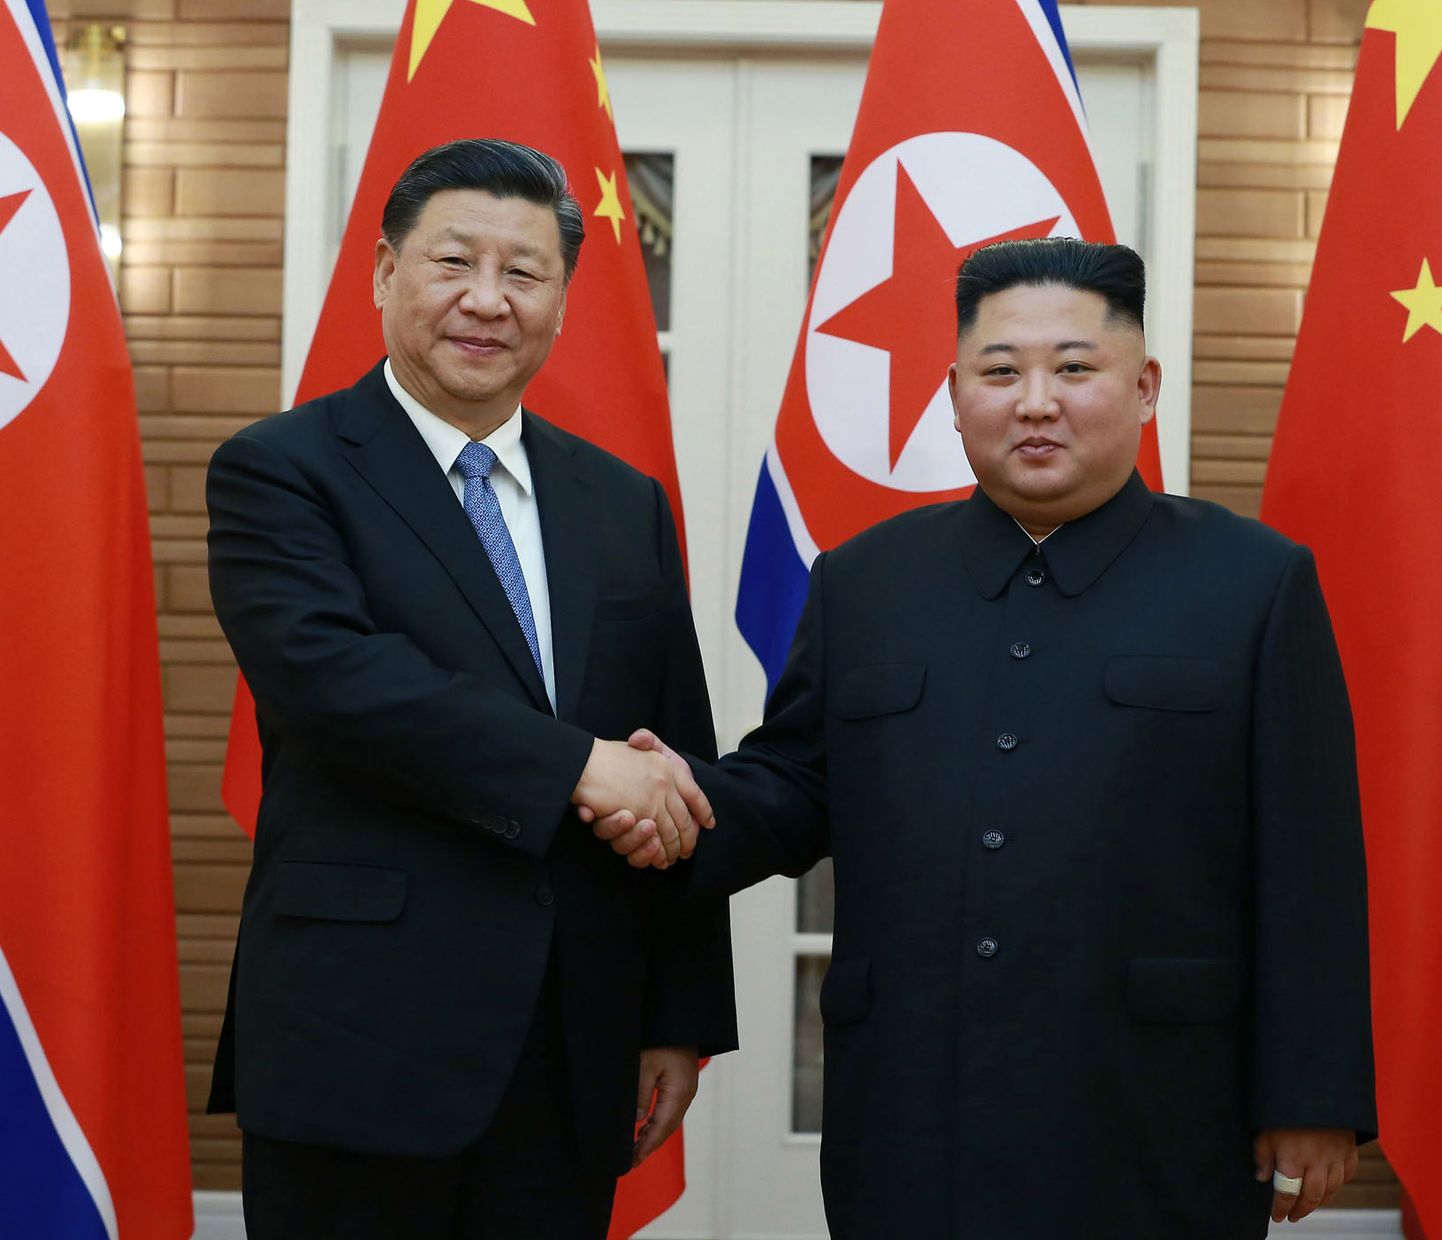 Hiina ja Põhja-Korea liidrid Xi Jinping (vasakul) ja Kim Jong-un juunis Hiina riigipea visiidi ajal Pyongyangis.